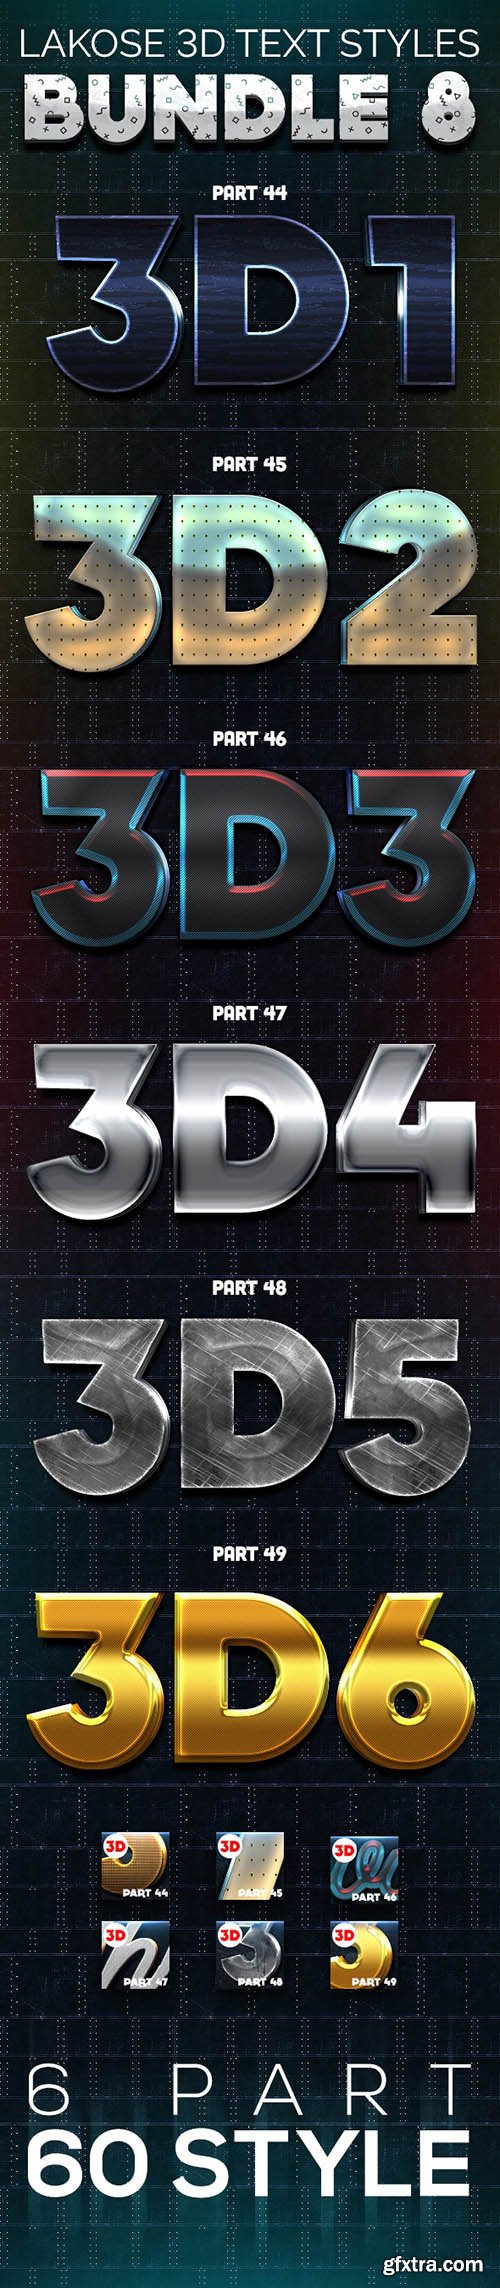 GraphicRiver - Lakose 3D Text Styles Bundle 8 26527596